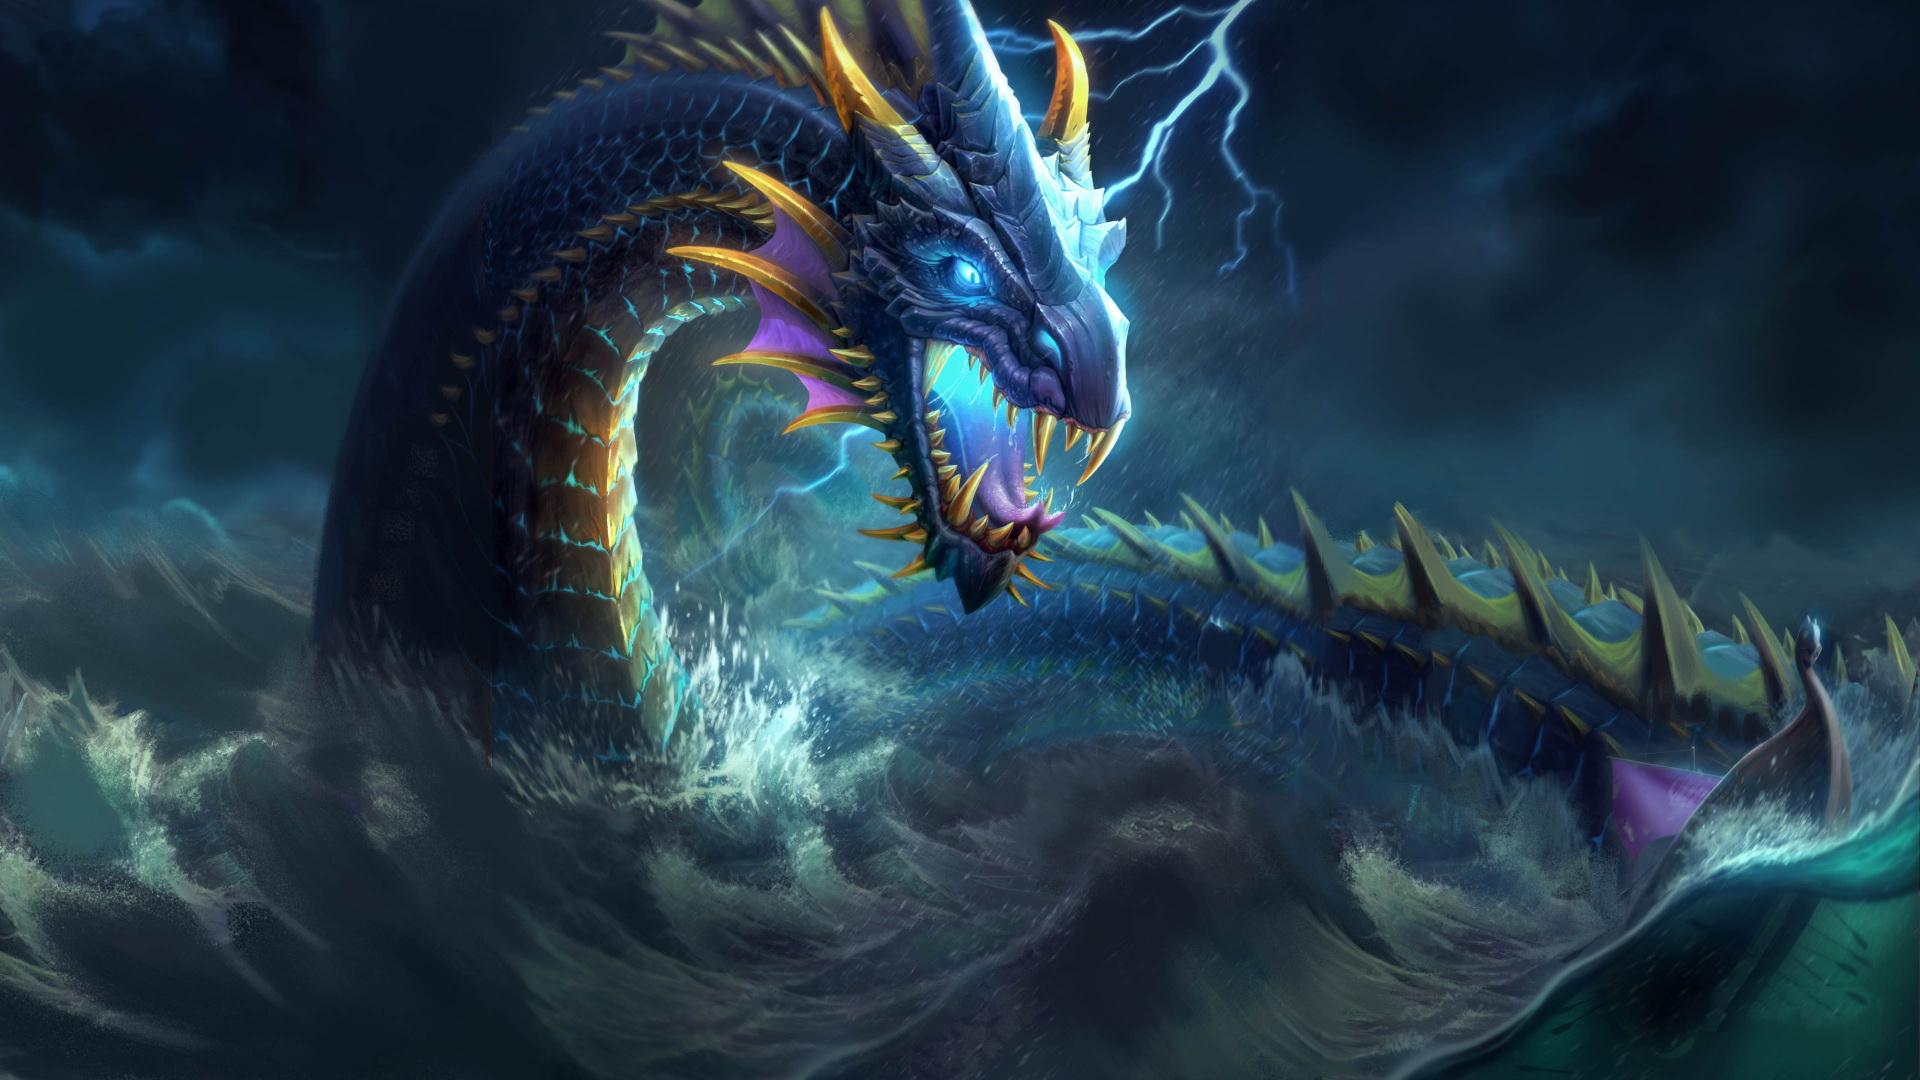 Dragon Beautiful Fantasy Creature Artwork Wallpaper and Free